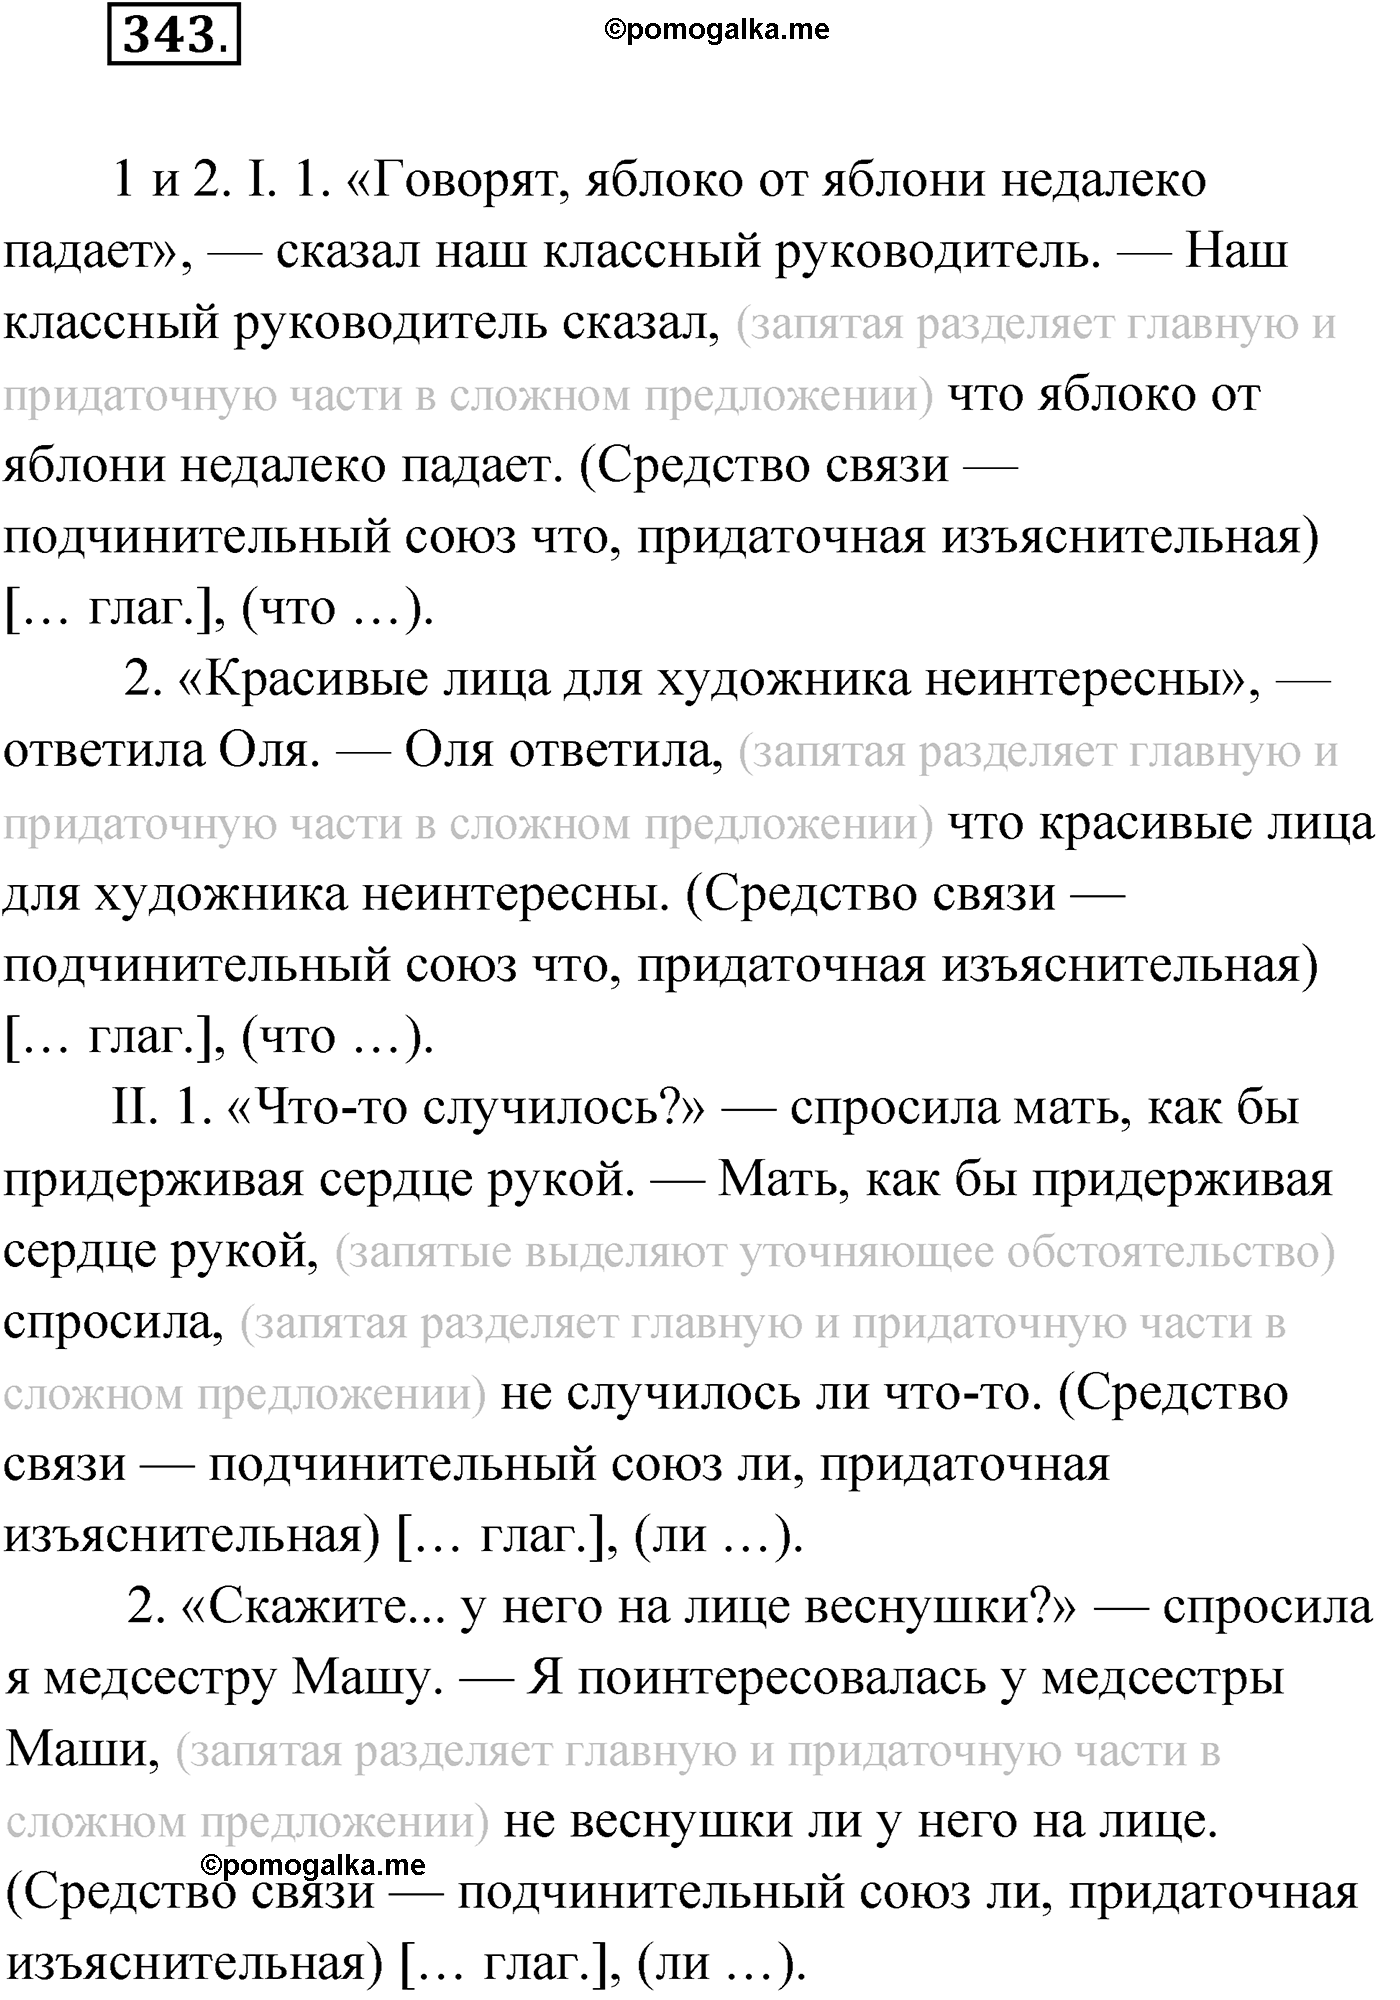 упражнение №343 русский язык 9 класс Мурина 2019 год